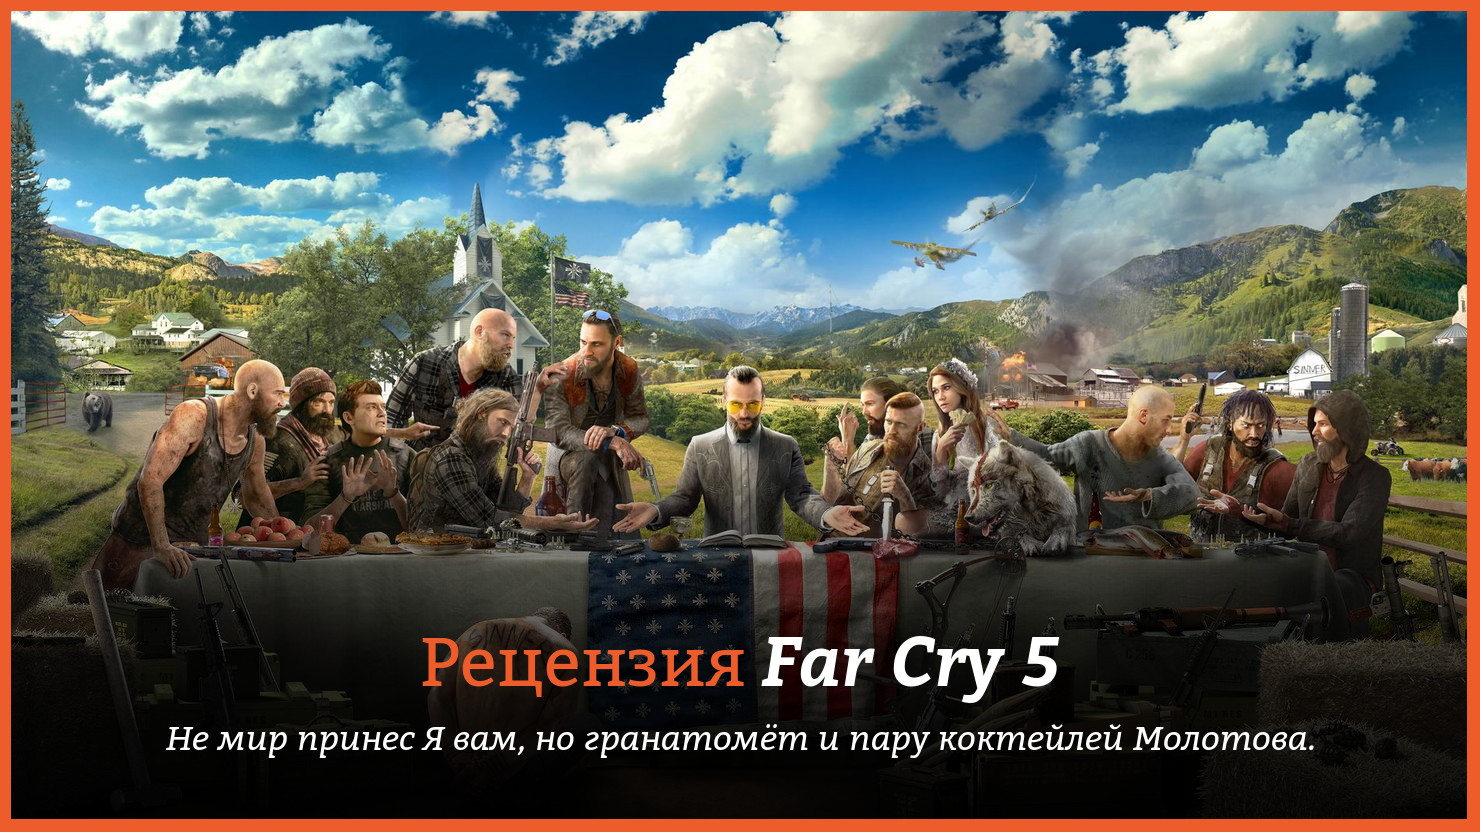 Peцeнзия и oтзывы нa игpy Far Cry 5